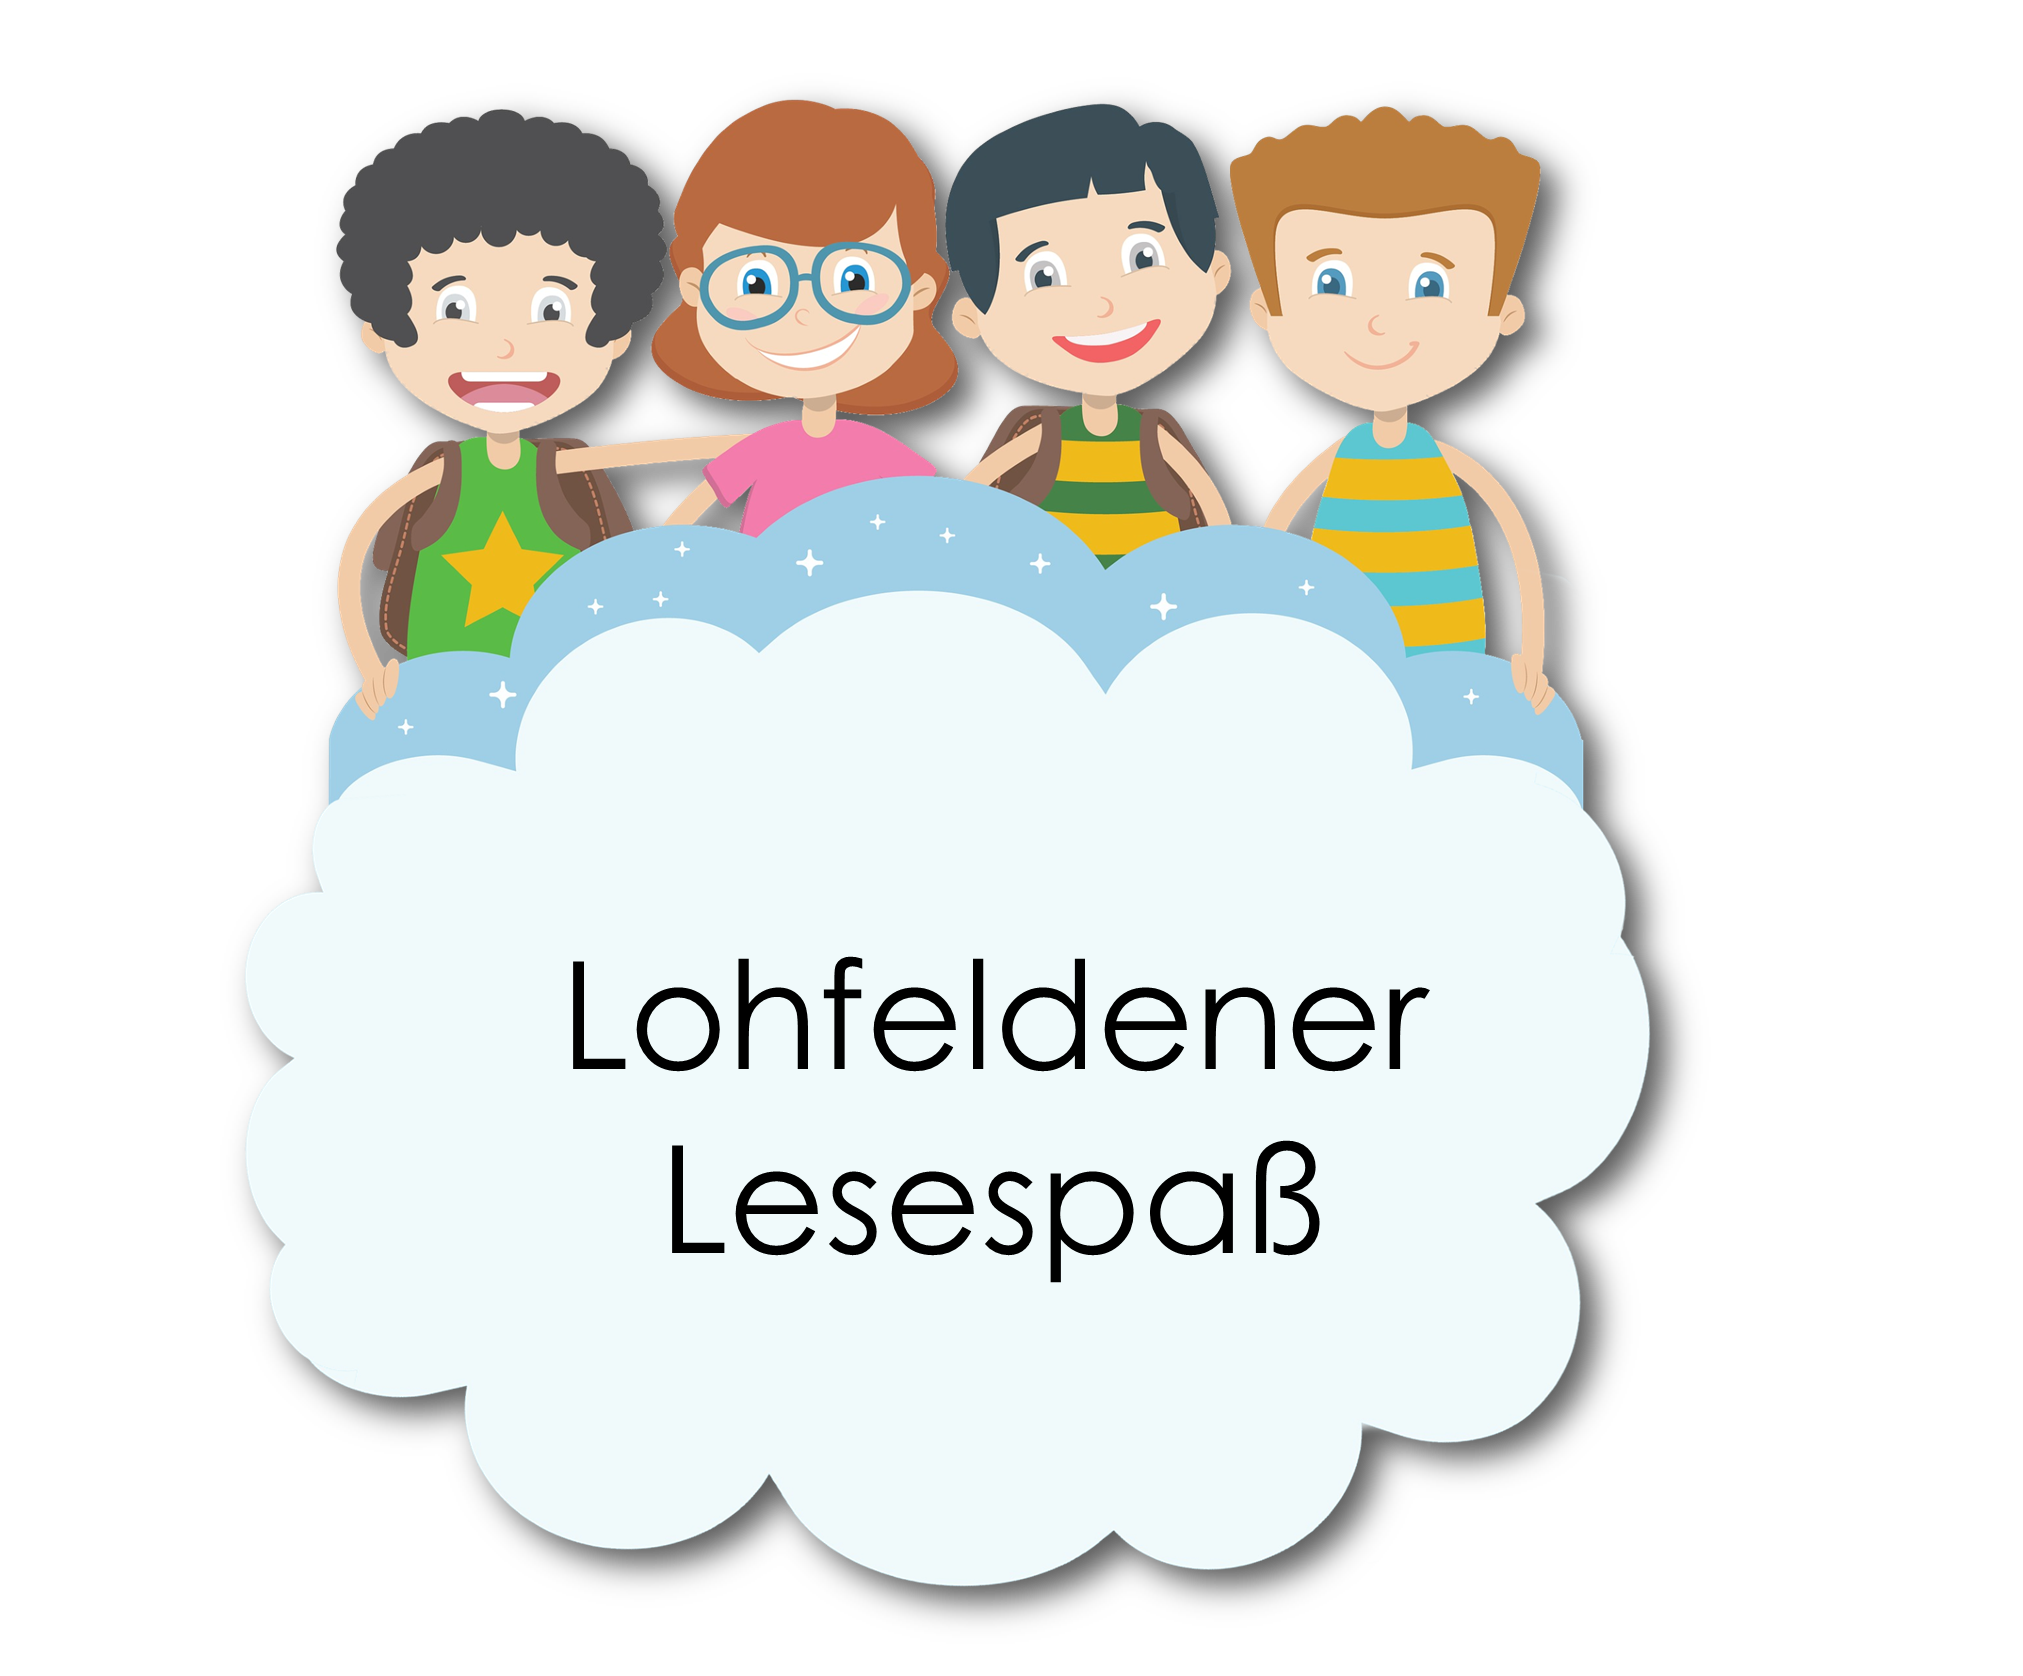 {#2021-logo-lohfeldener-lesespaß}